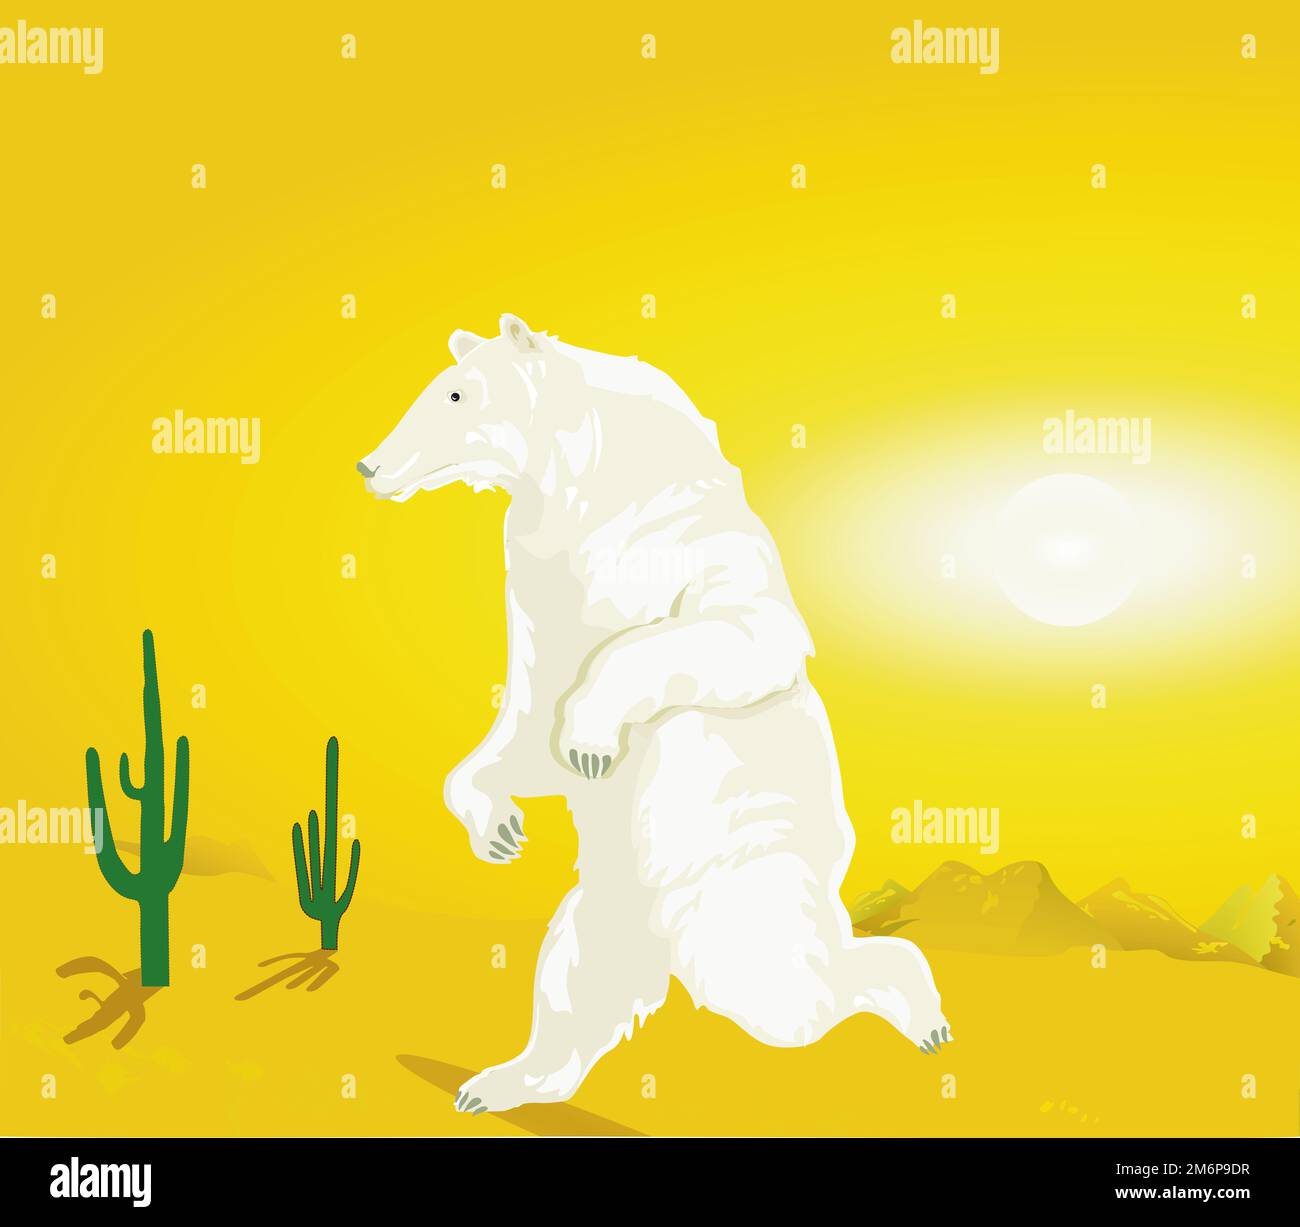 Ours polaire dans le désert, illustration du réchauffement climatique Banque D'Images